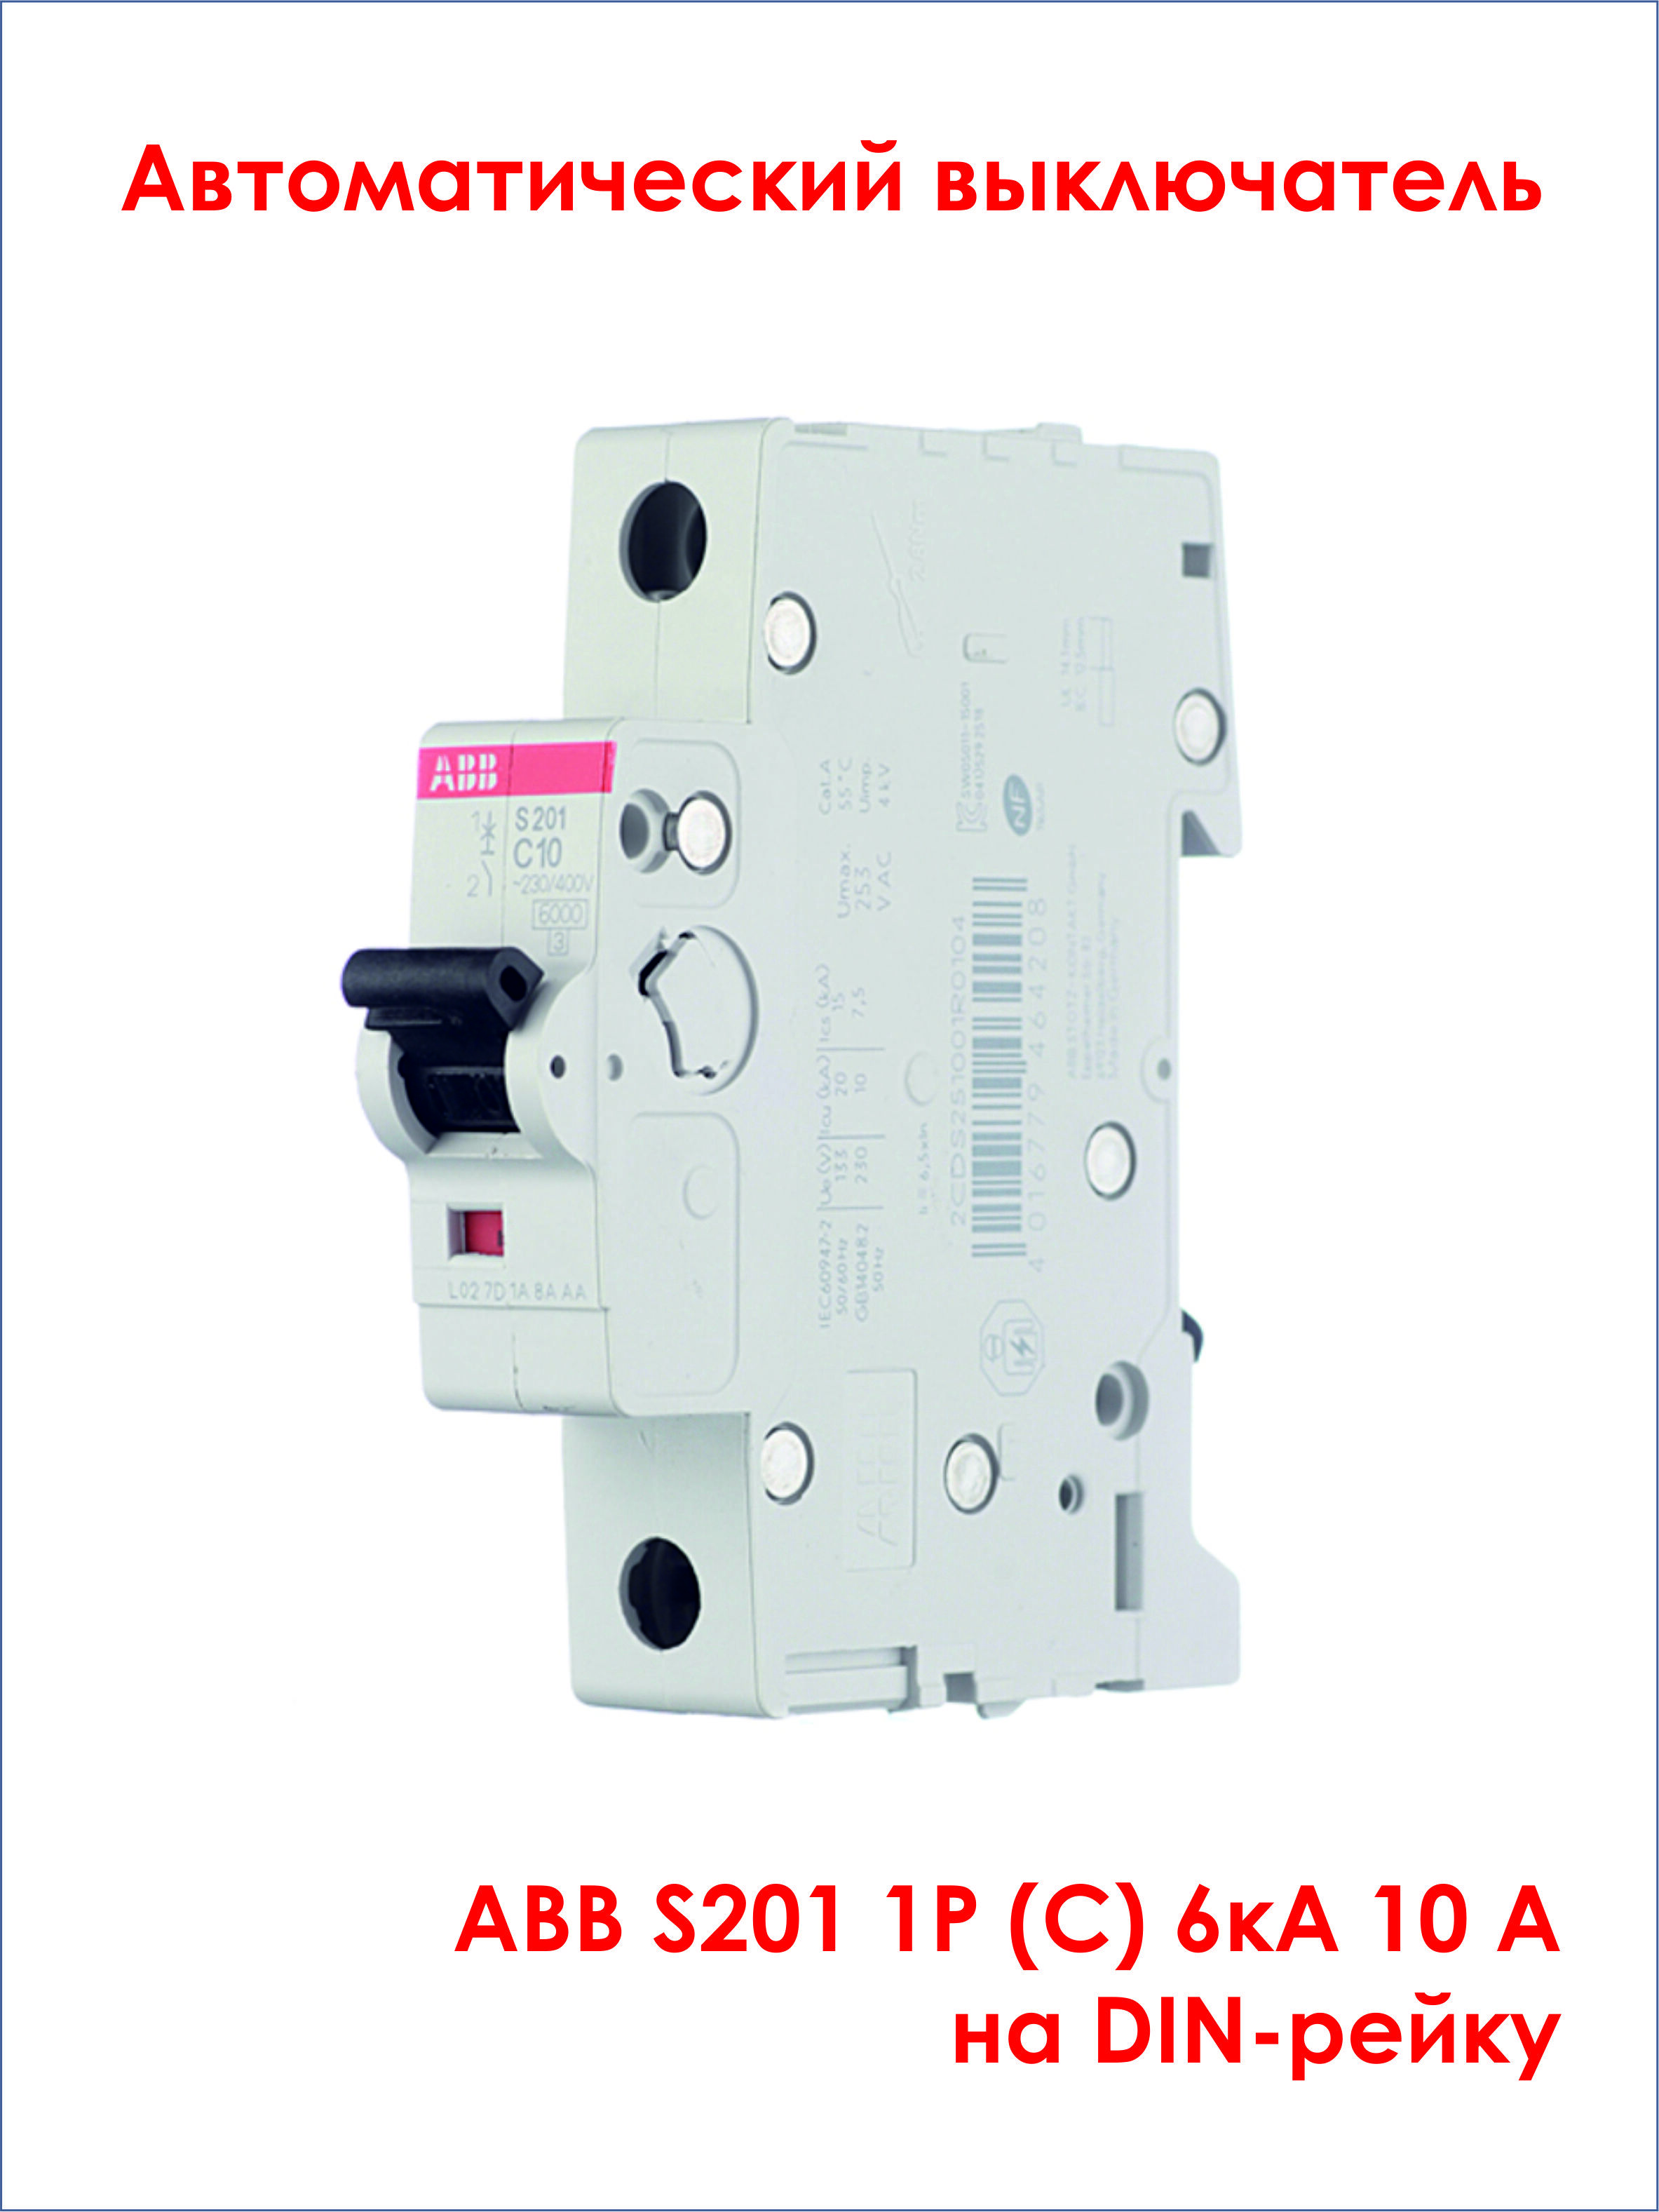 Выключатель автоматический abb 1p s201. ABB sh201. ABB sh 201 c25. ABB s201 c16. Автоматический выключатель ABB sh201 1p c16 а 6 ка 2cds211001r0164.